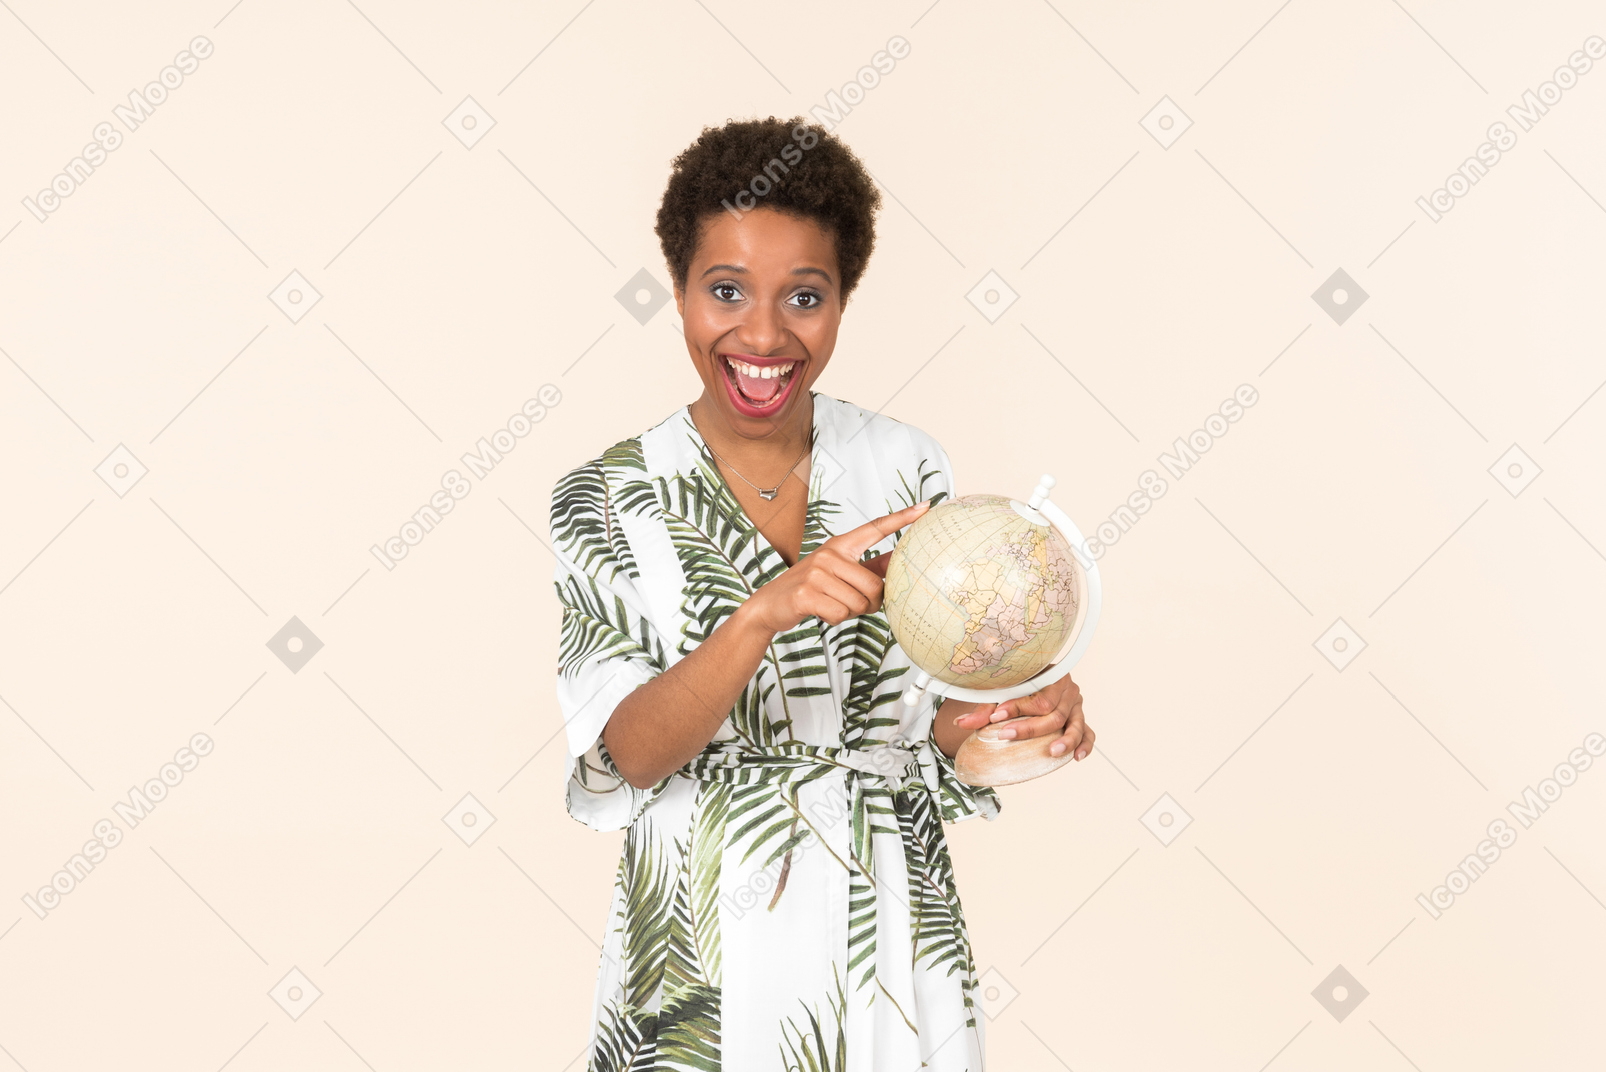 Mujer negra de pelo corto con un vestido blanco y verde, de pie con un globo en la mano